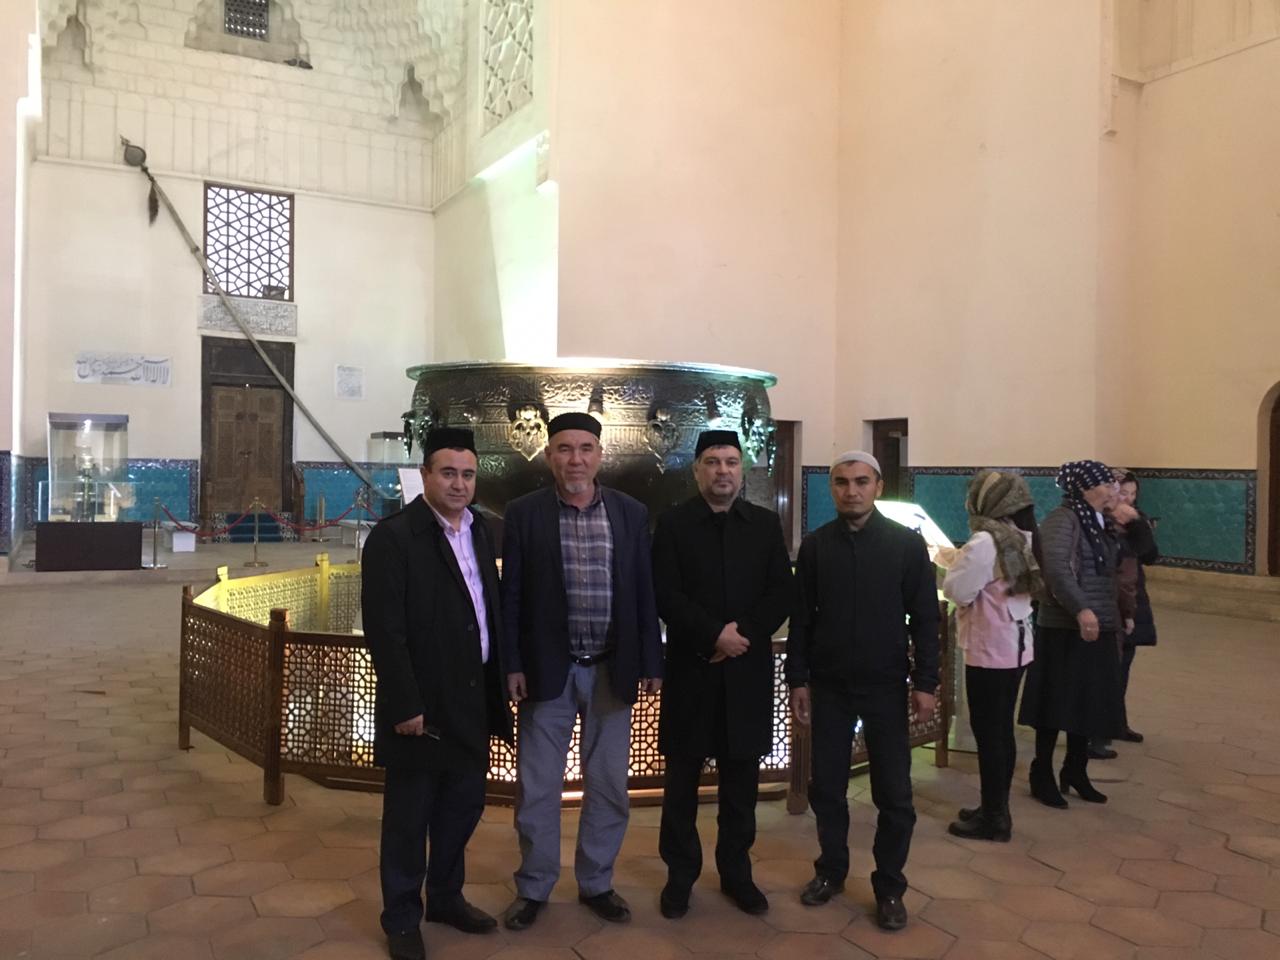 Түркістан: Өзбекстаннан теологтар келді